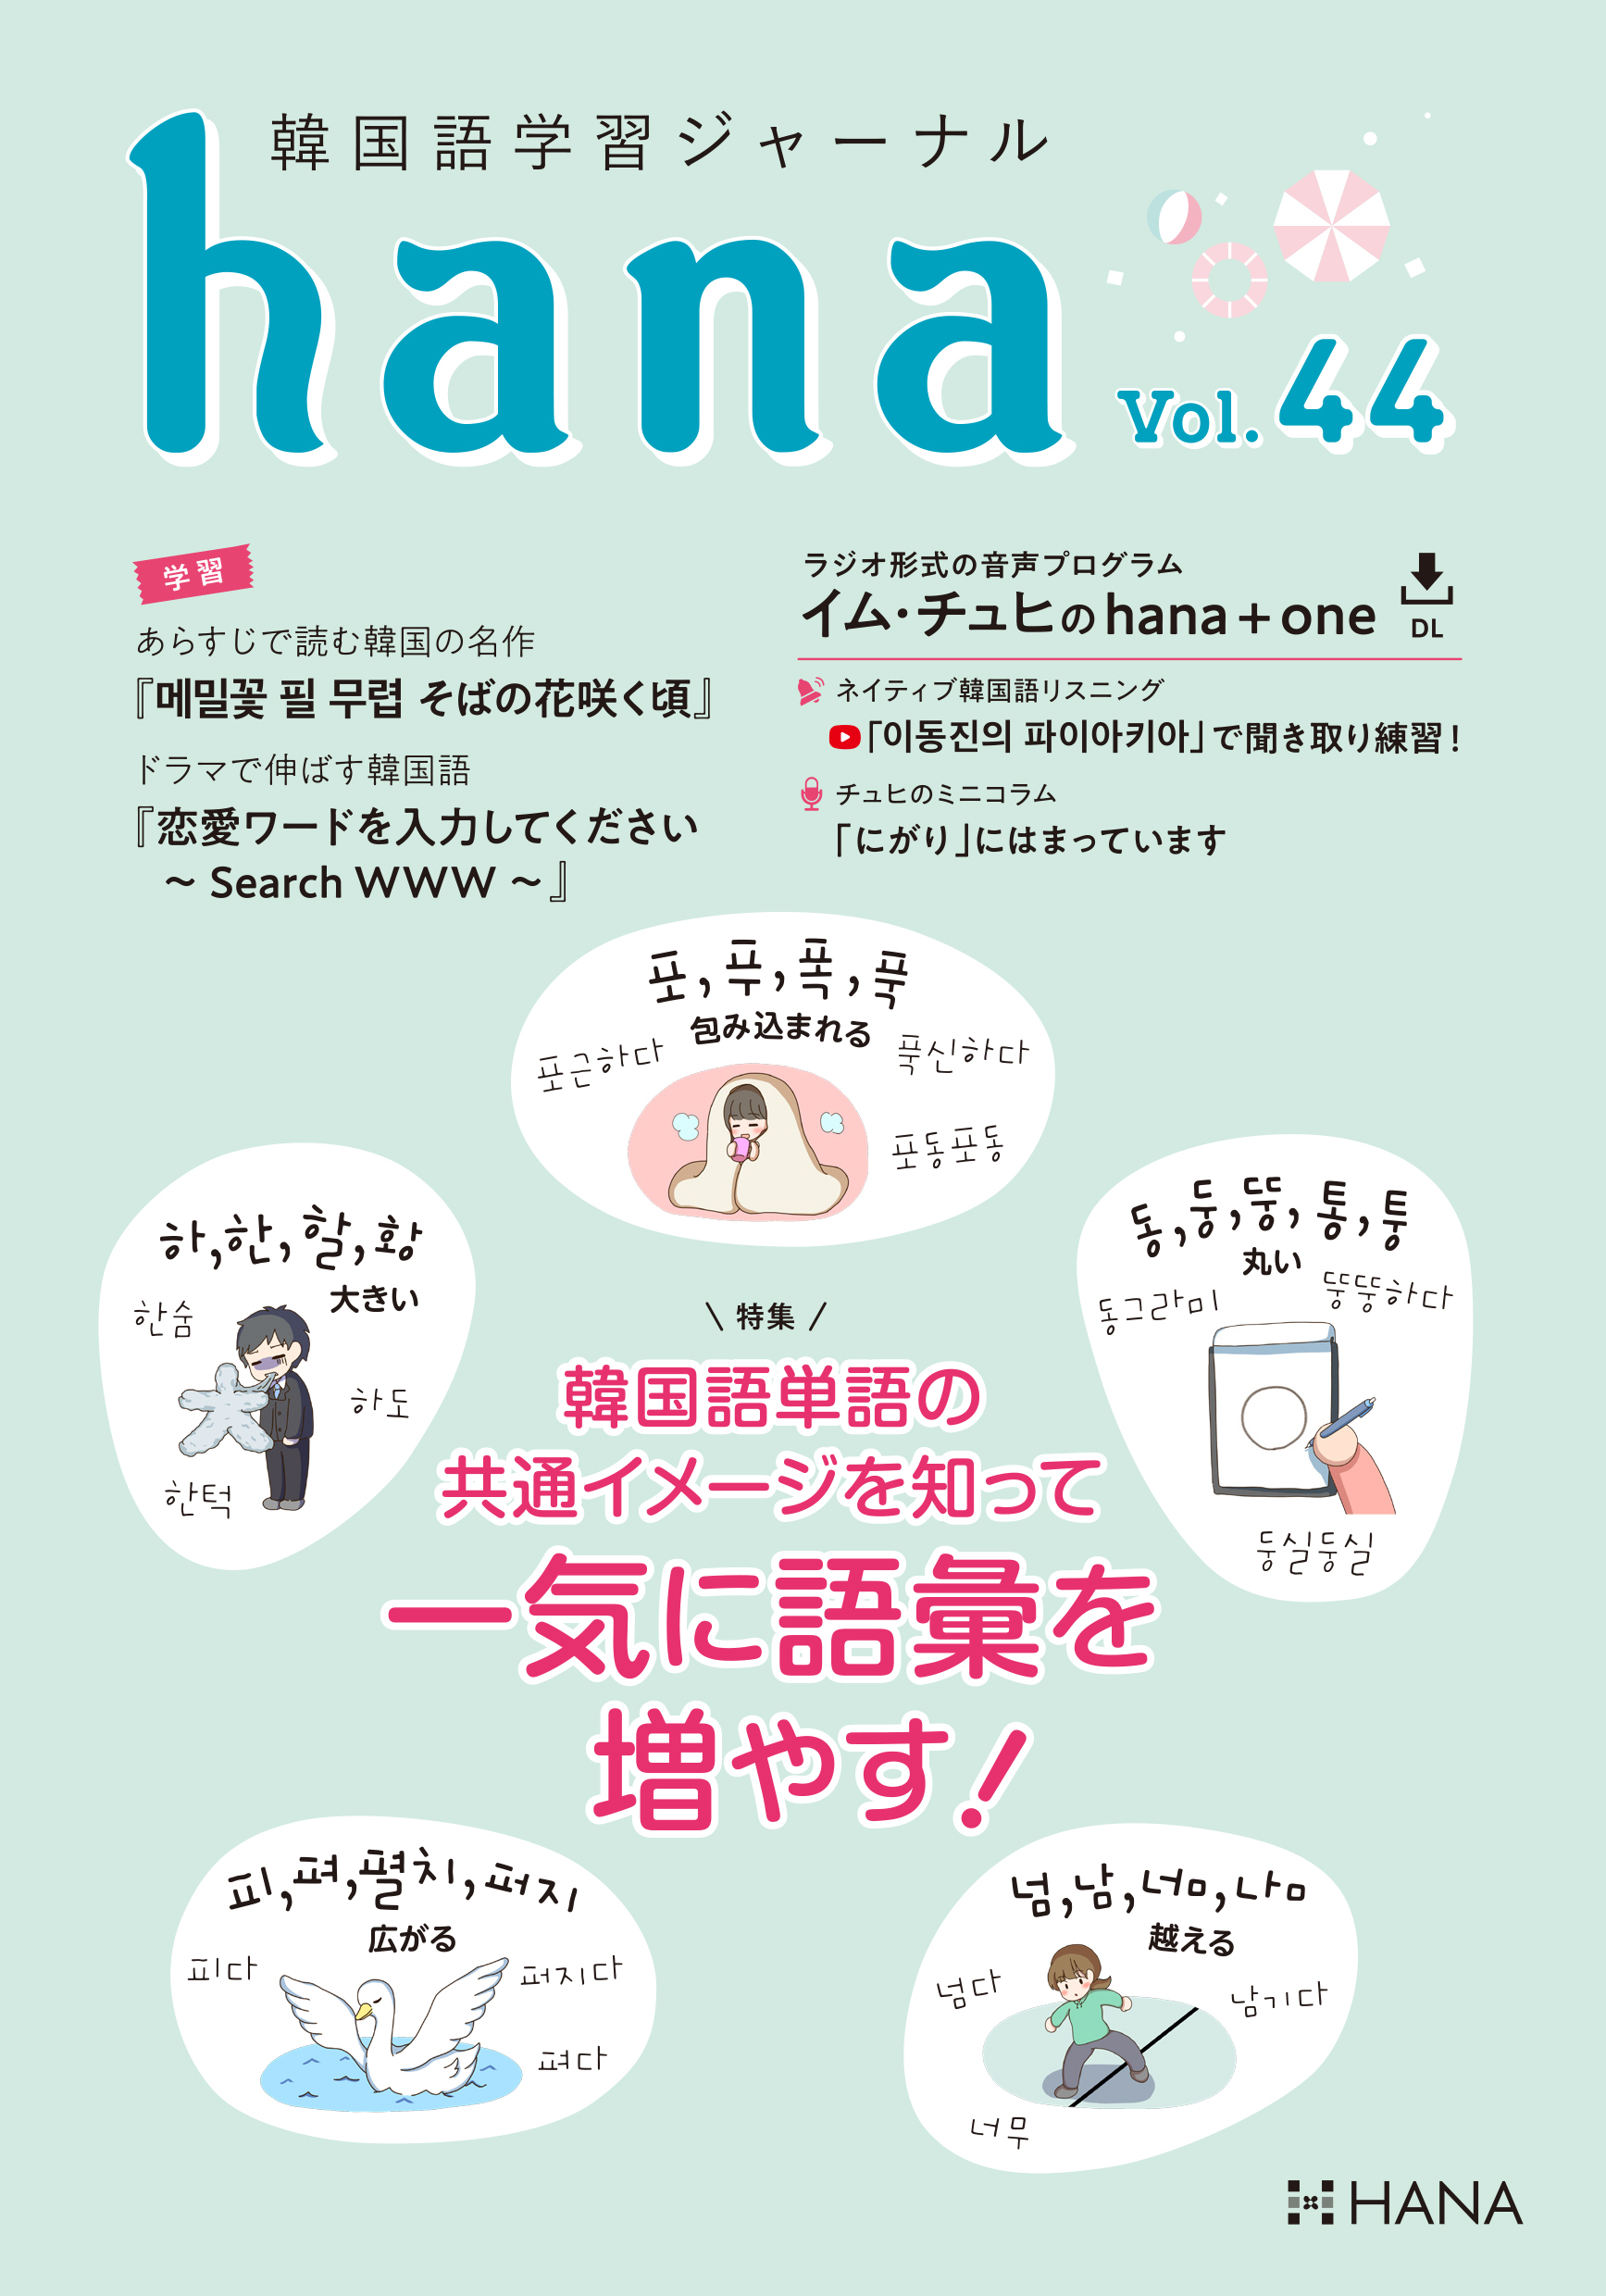 『韓国語学習ジャーナルhana Vol. 44』のイメージ